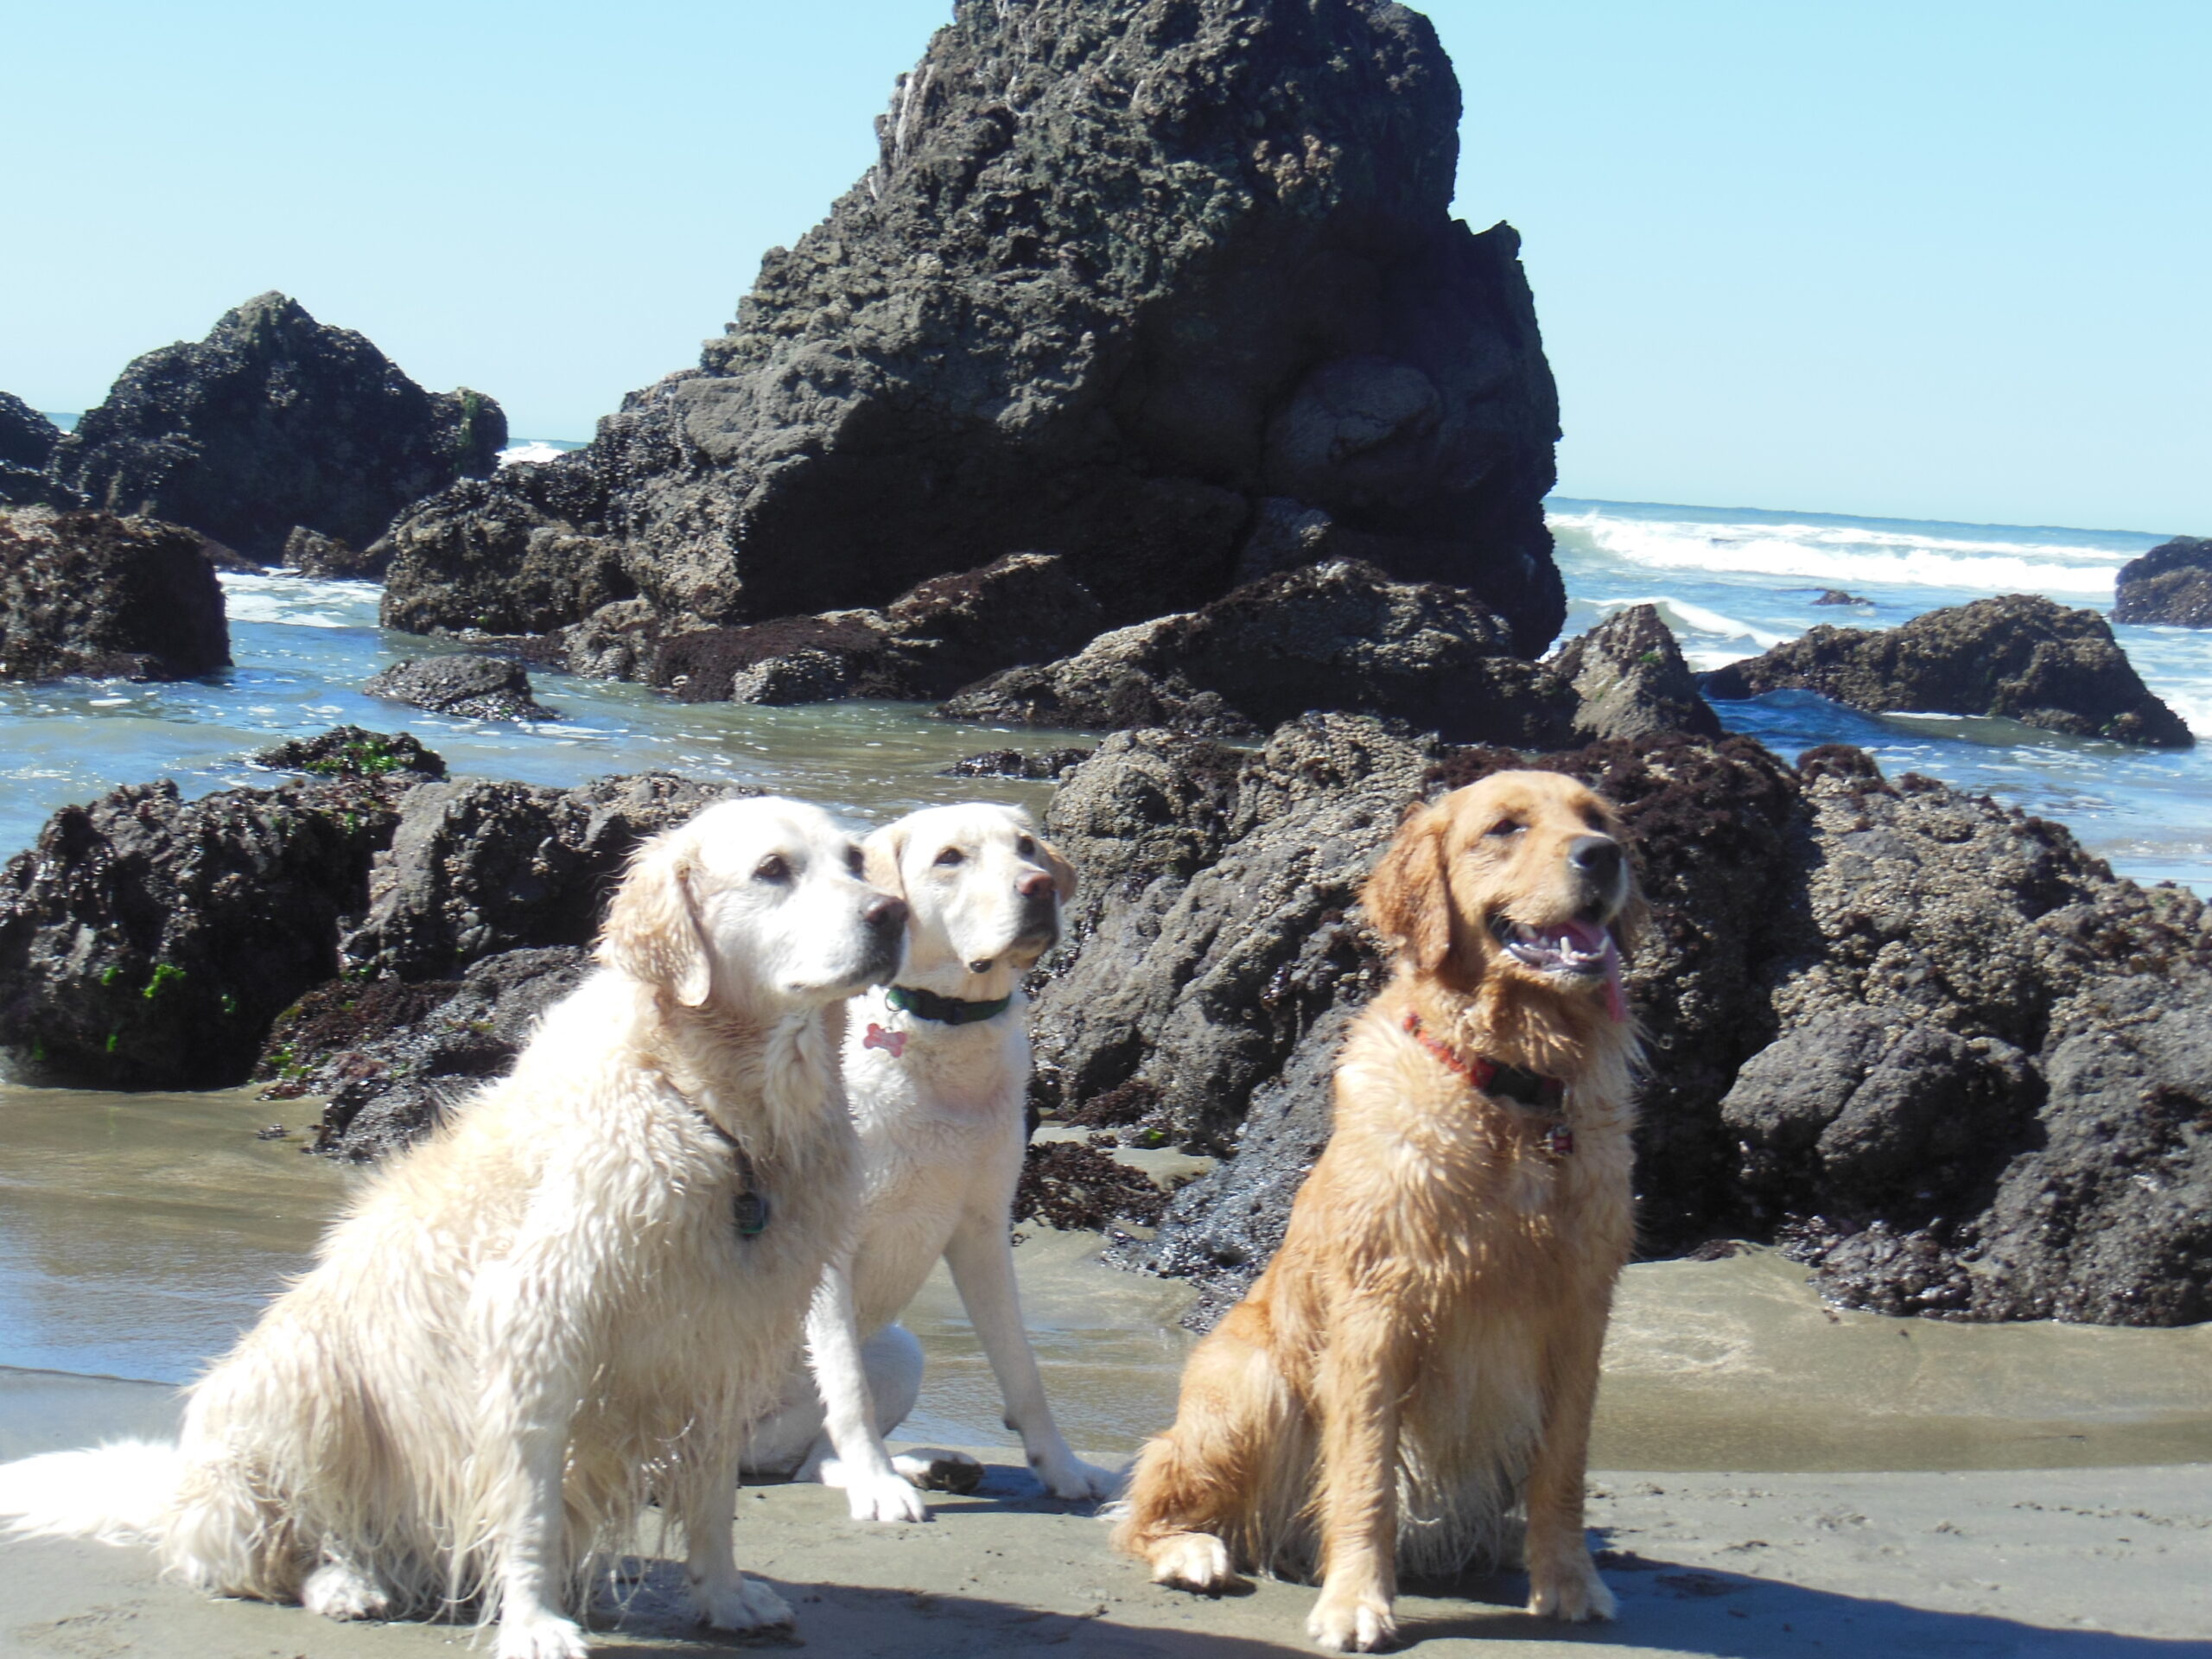 Three blond dogs sit on a beach.